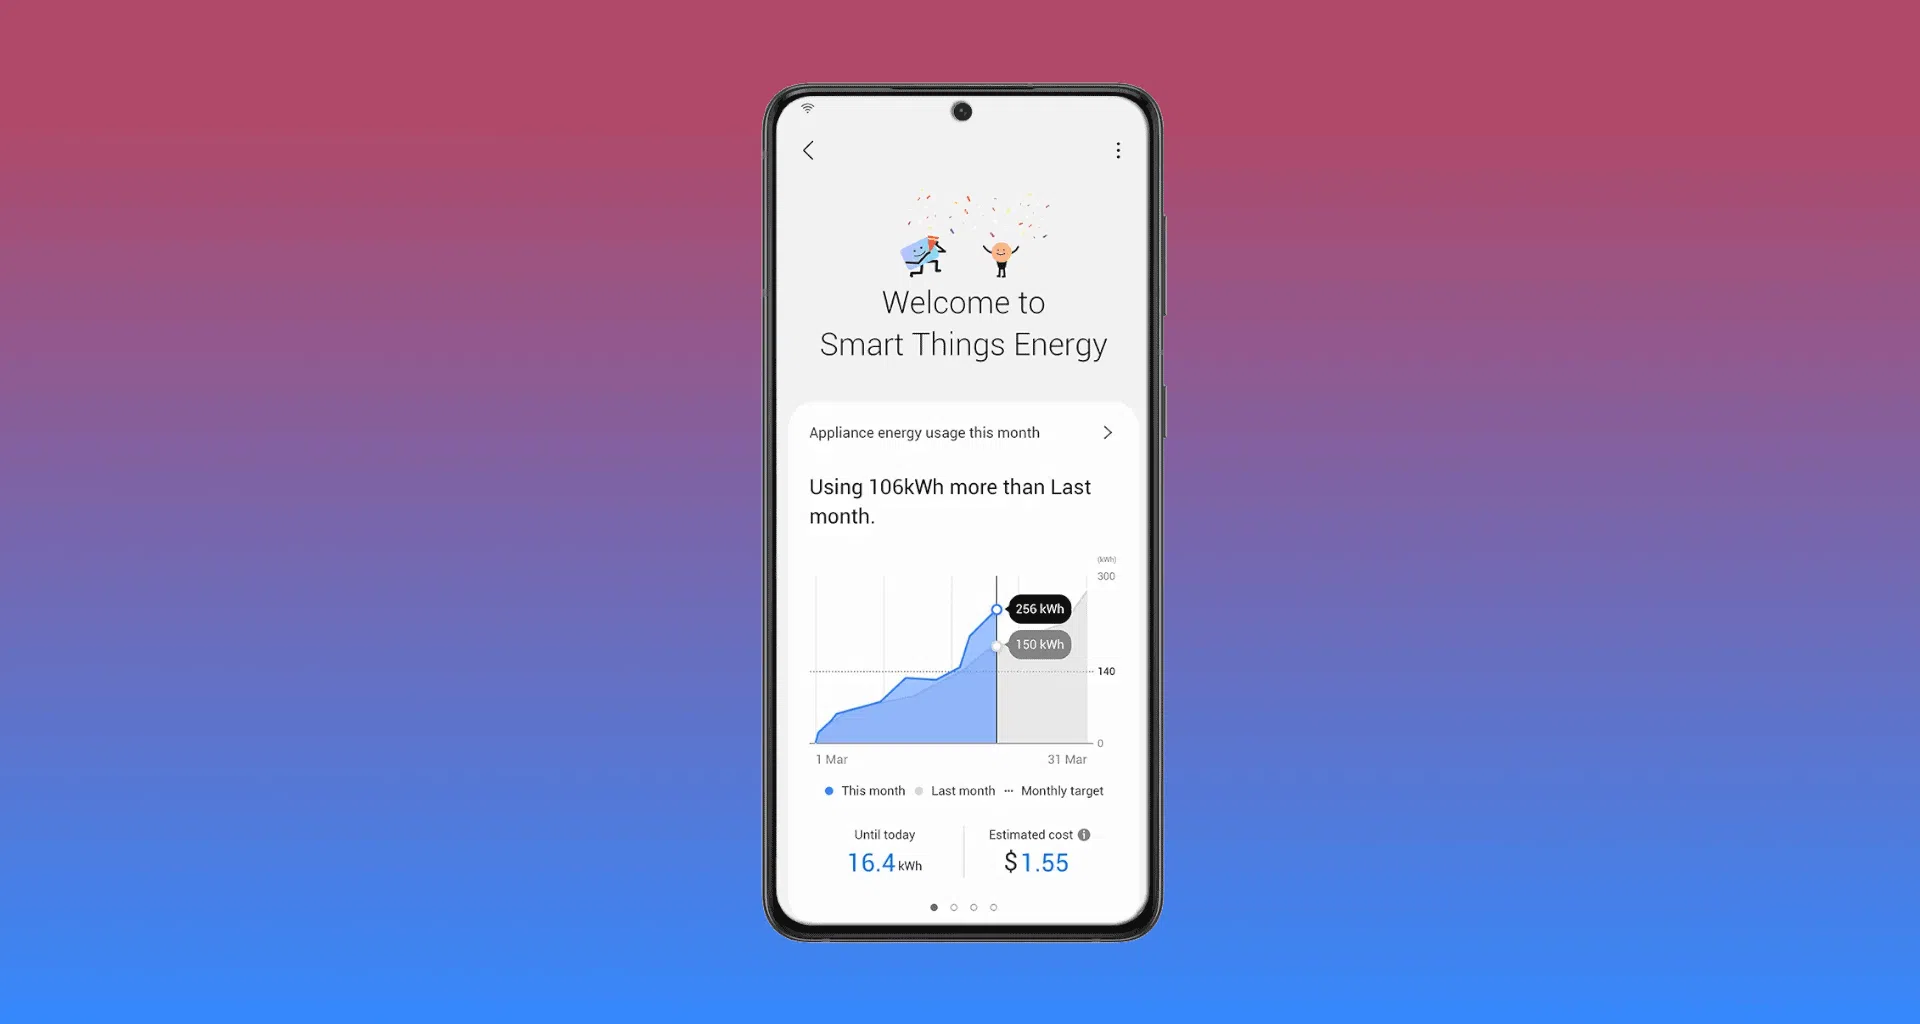 Voltado para os eletrodomésticos conectados da marca, o smartthings energy permite um melhor controle nos gastos com a conta de energia elétrica da sua casa